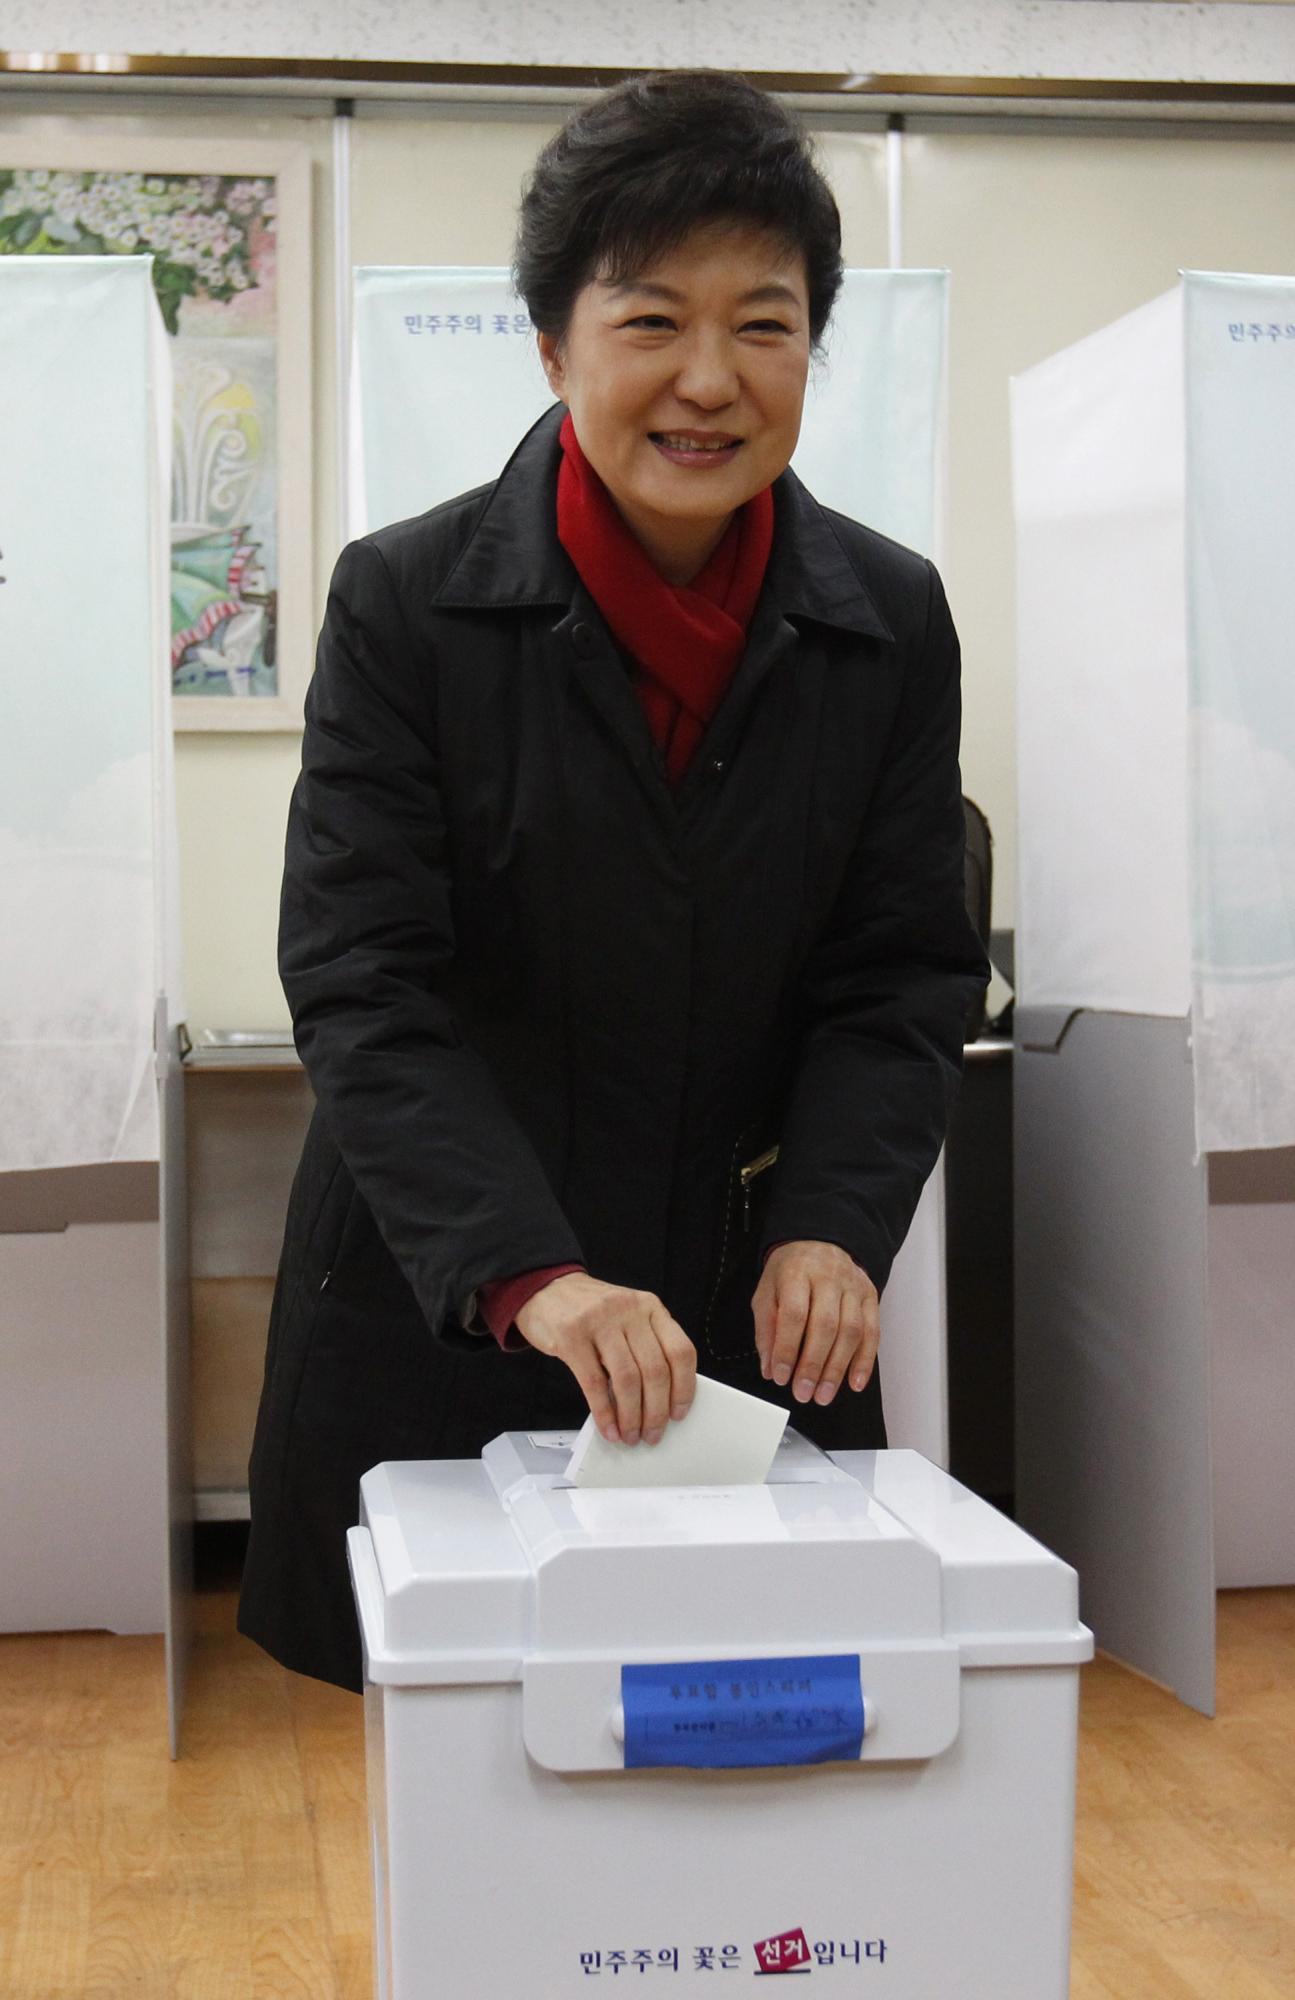 朴槿惠赢得雌雄对决 “冰公主”当选韩国首位女总统